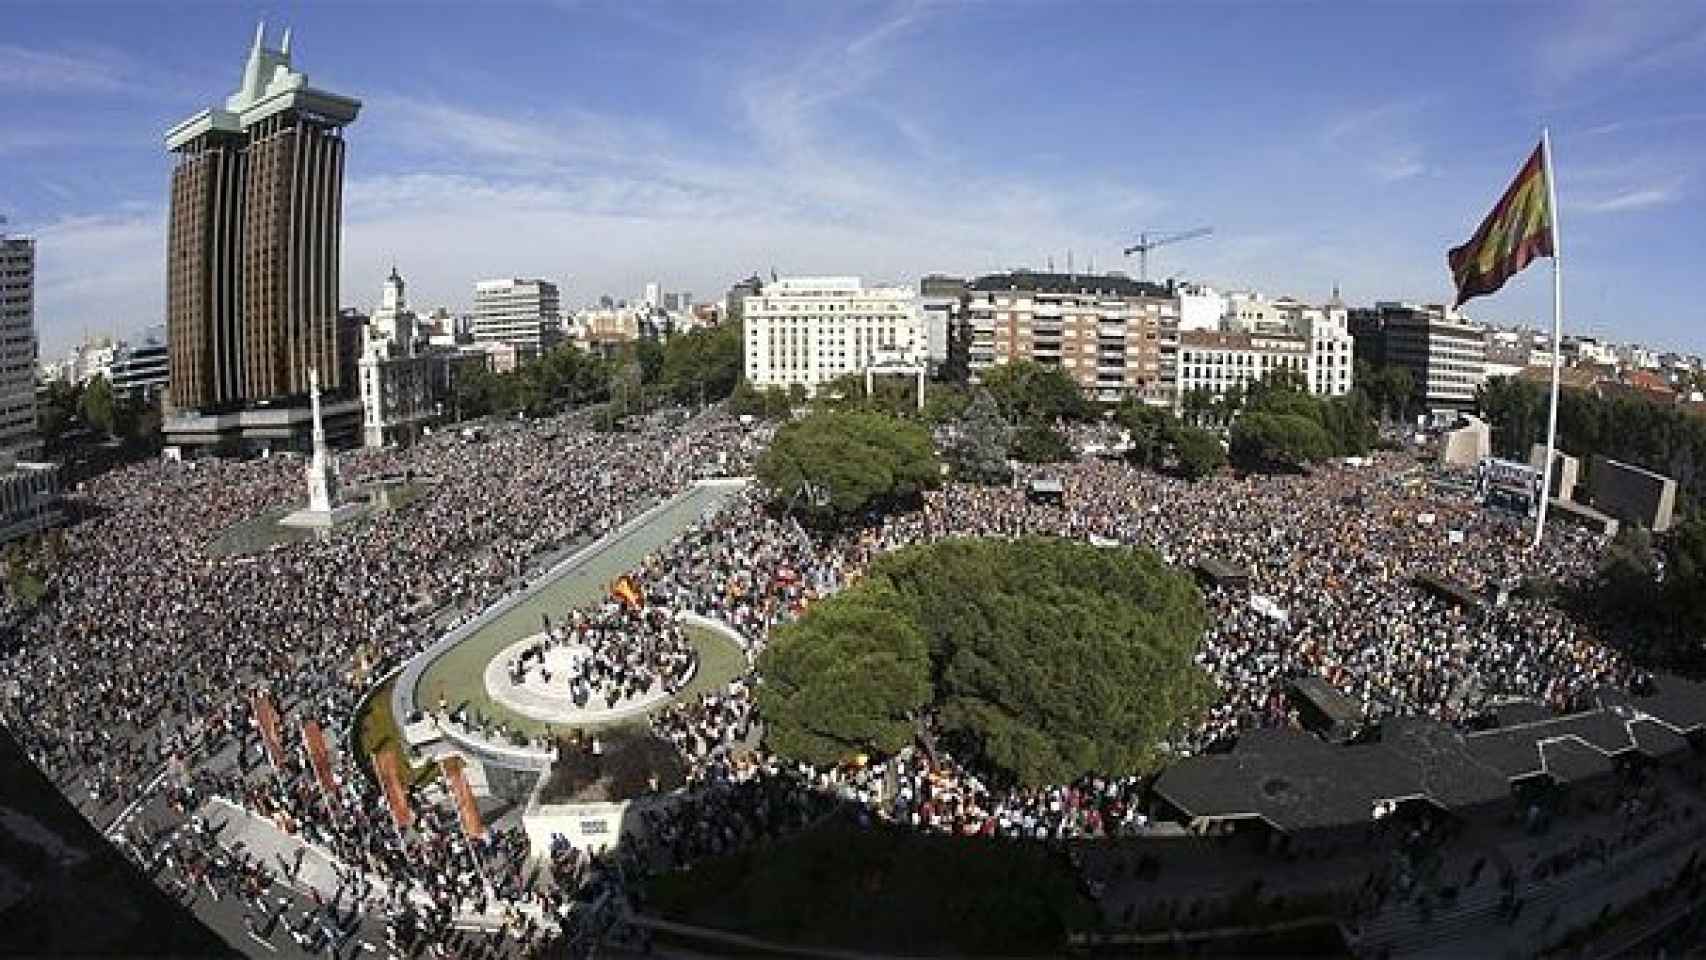 Aspecto de la Plaza de Colón y aledaños durante la concentración contra la decisión del TEDH